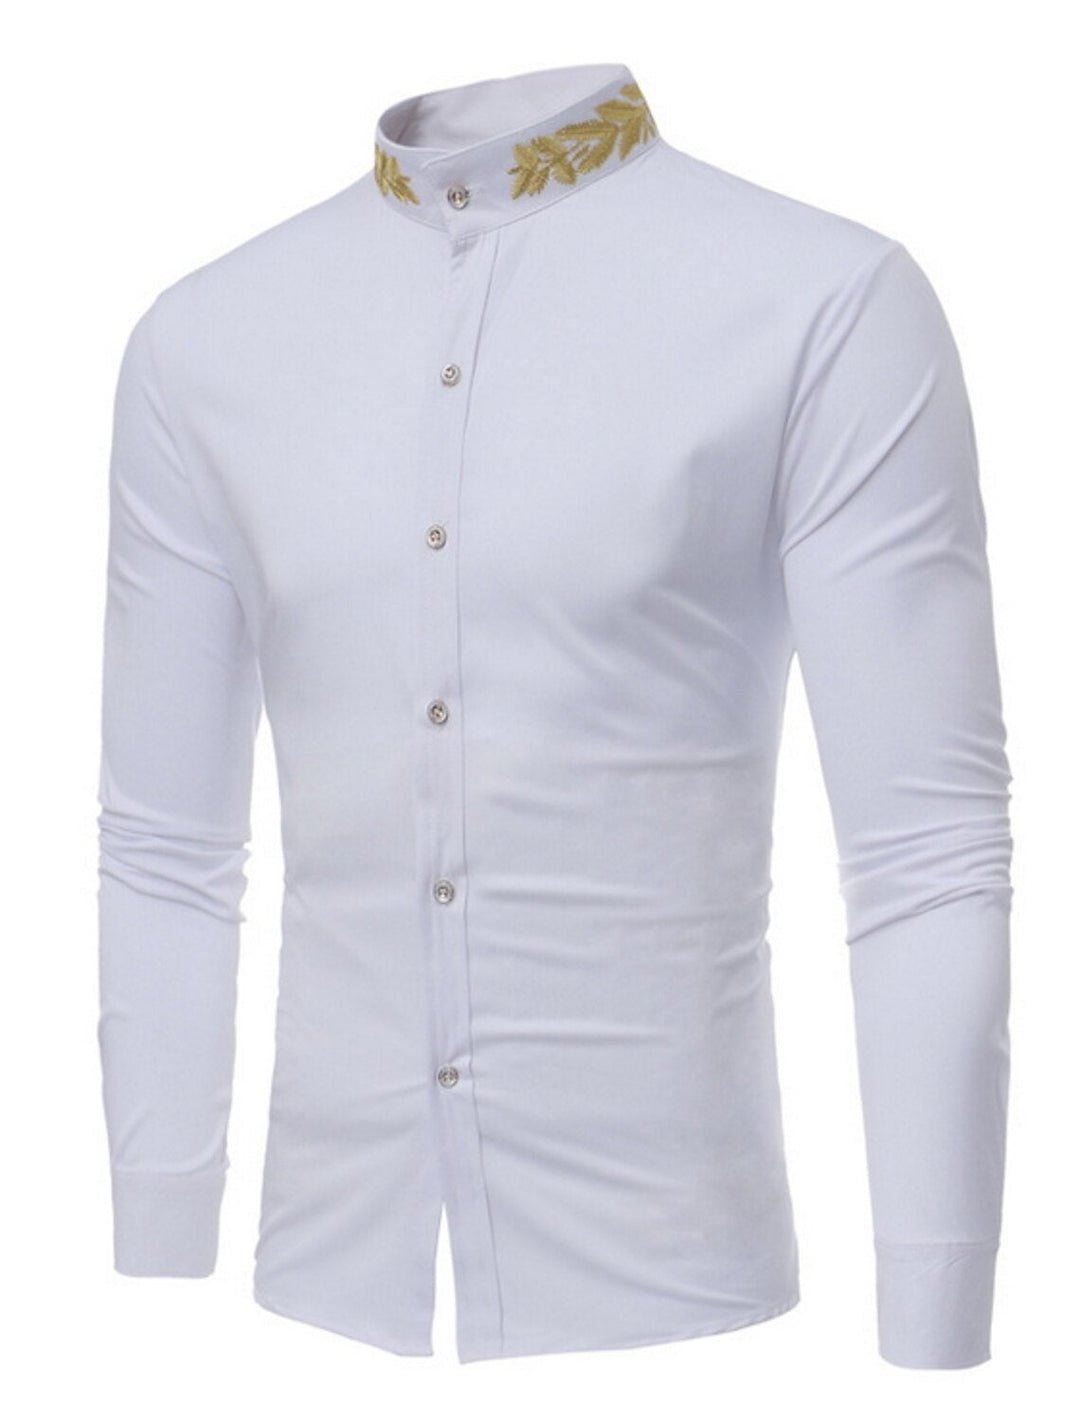 White Burgundy Black Men's Long Sleeves Casual Shirt